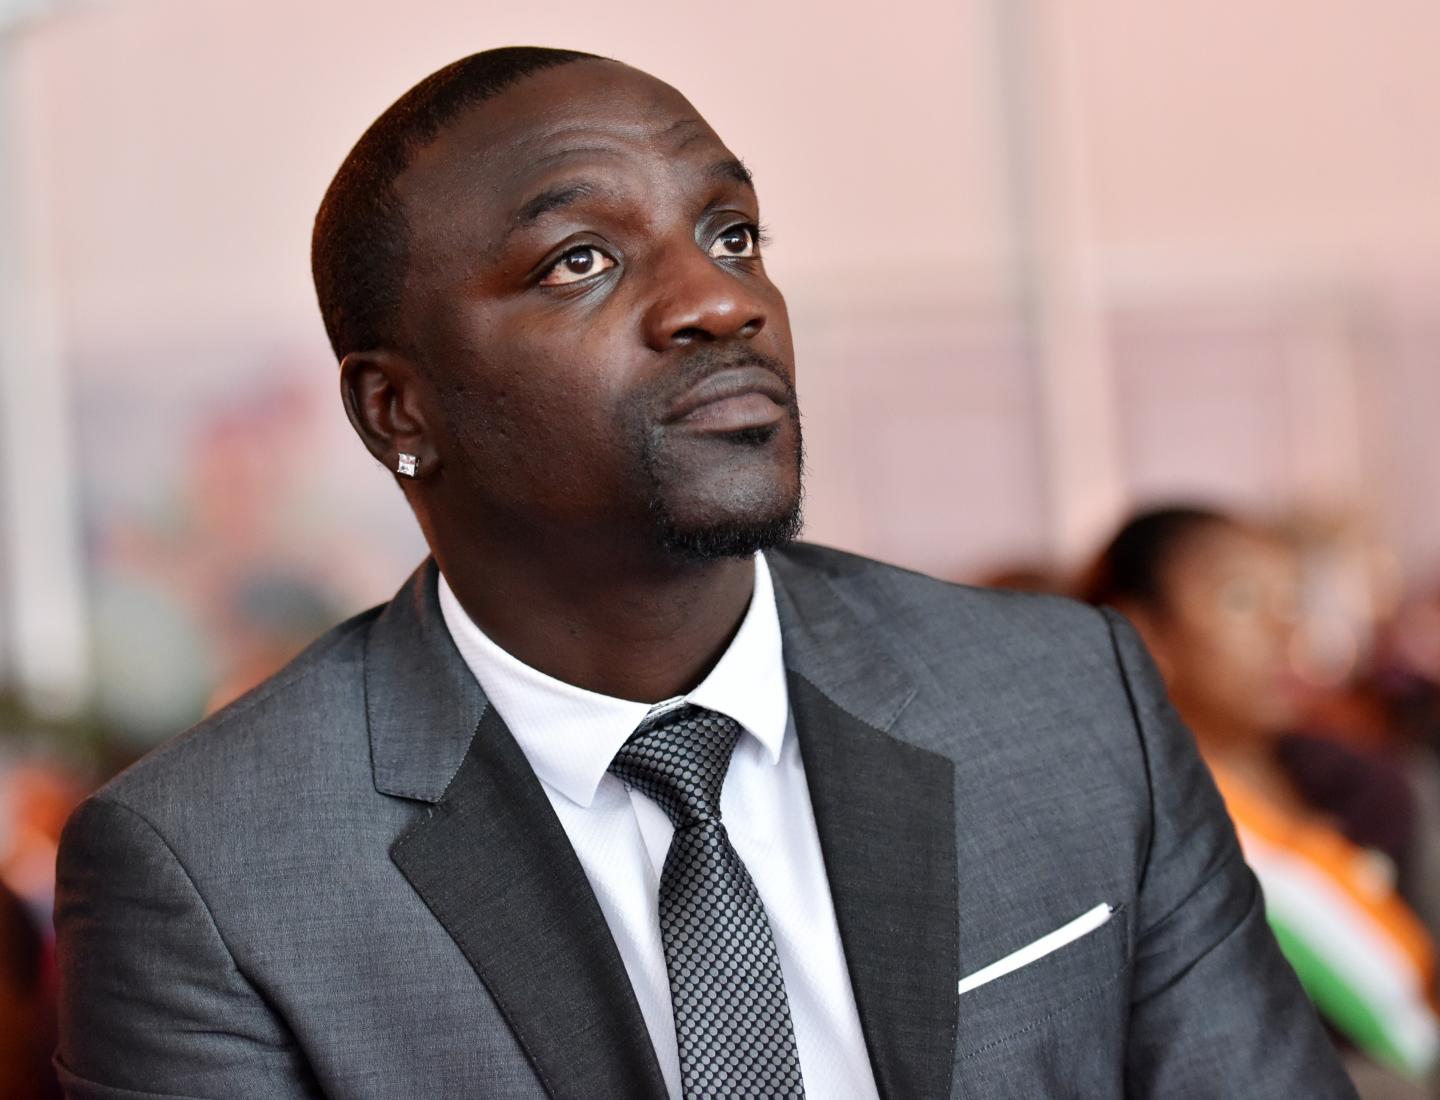 Akon futur président des États-Unis ? Le chanteur veut se présenter en 2024 (Vidéo)